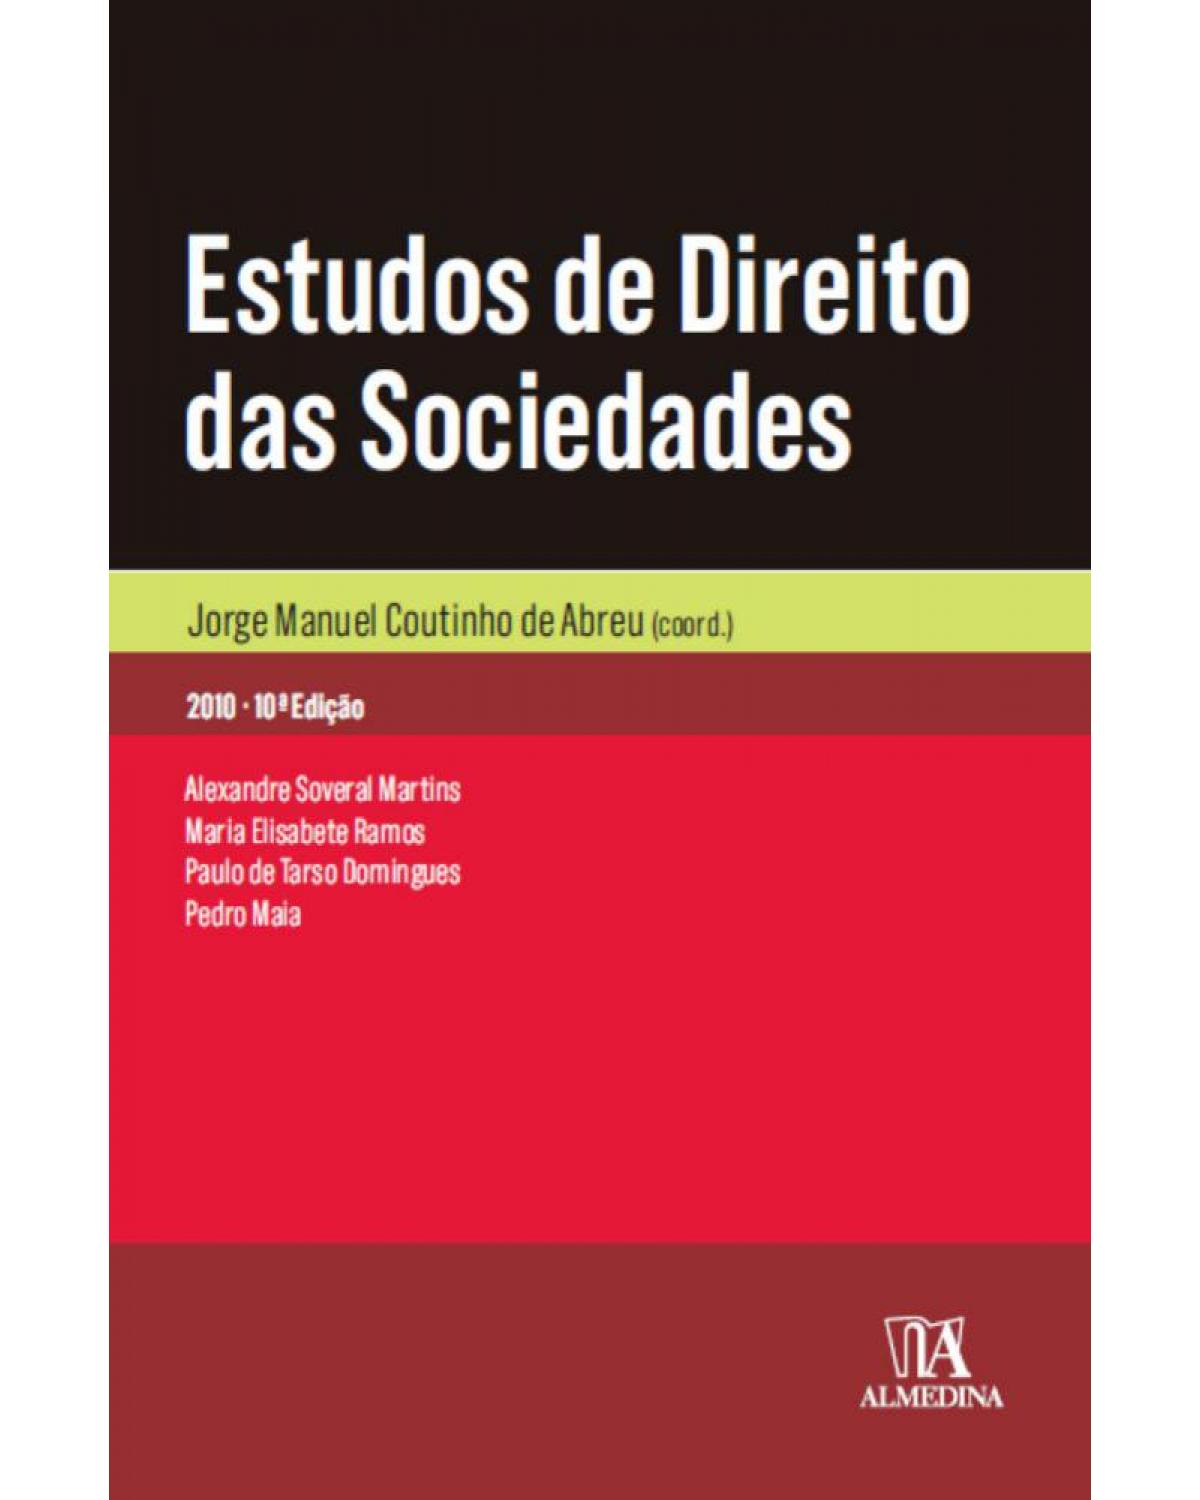 Estudos de direito das sociedades - 10ª Edição | 2010